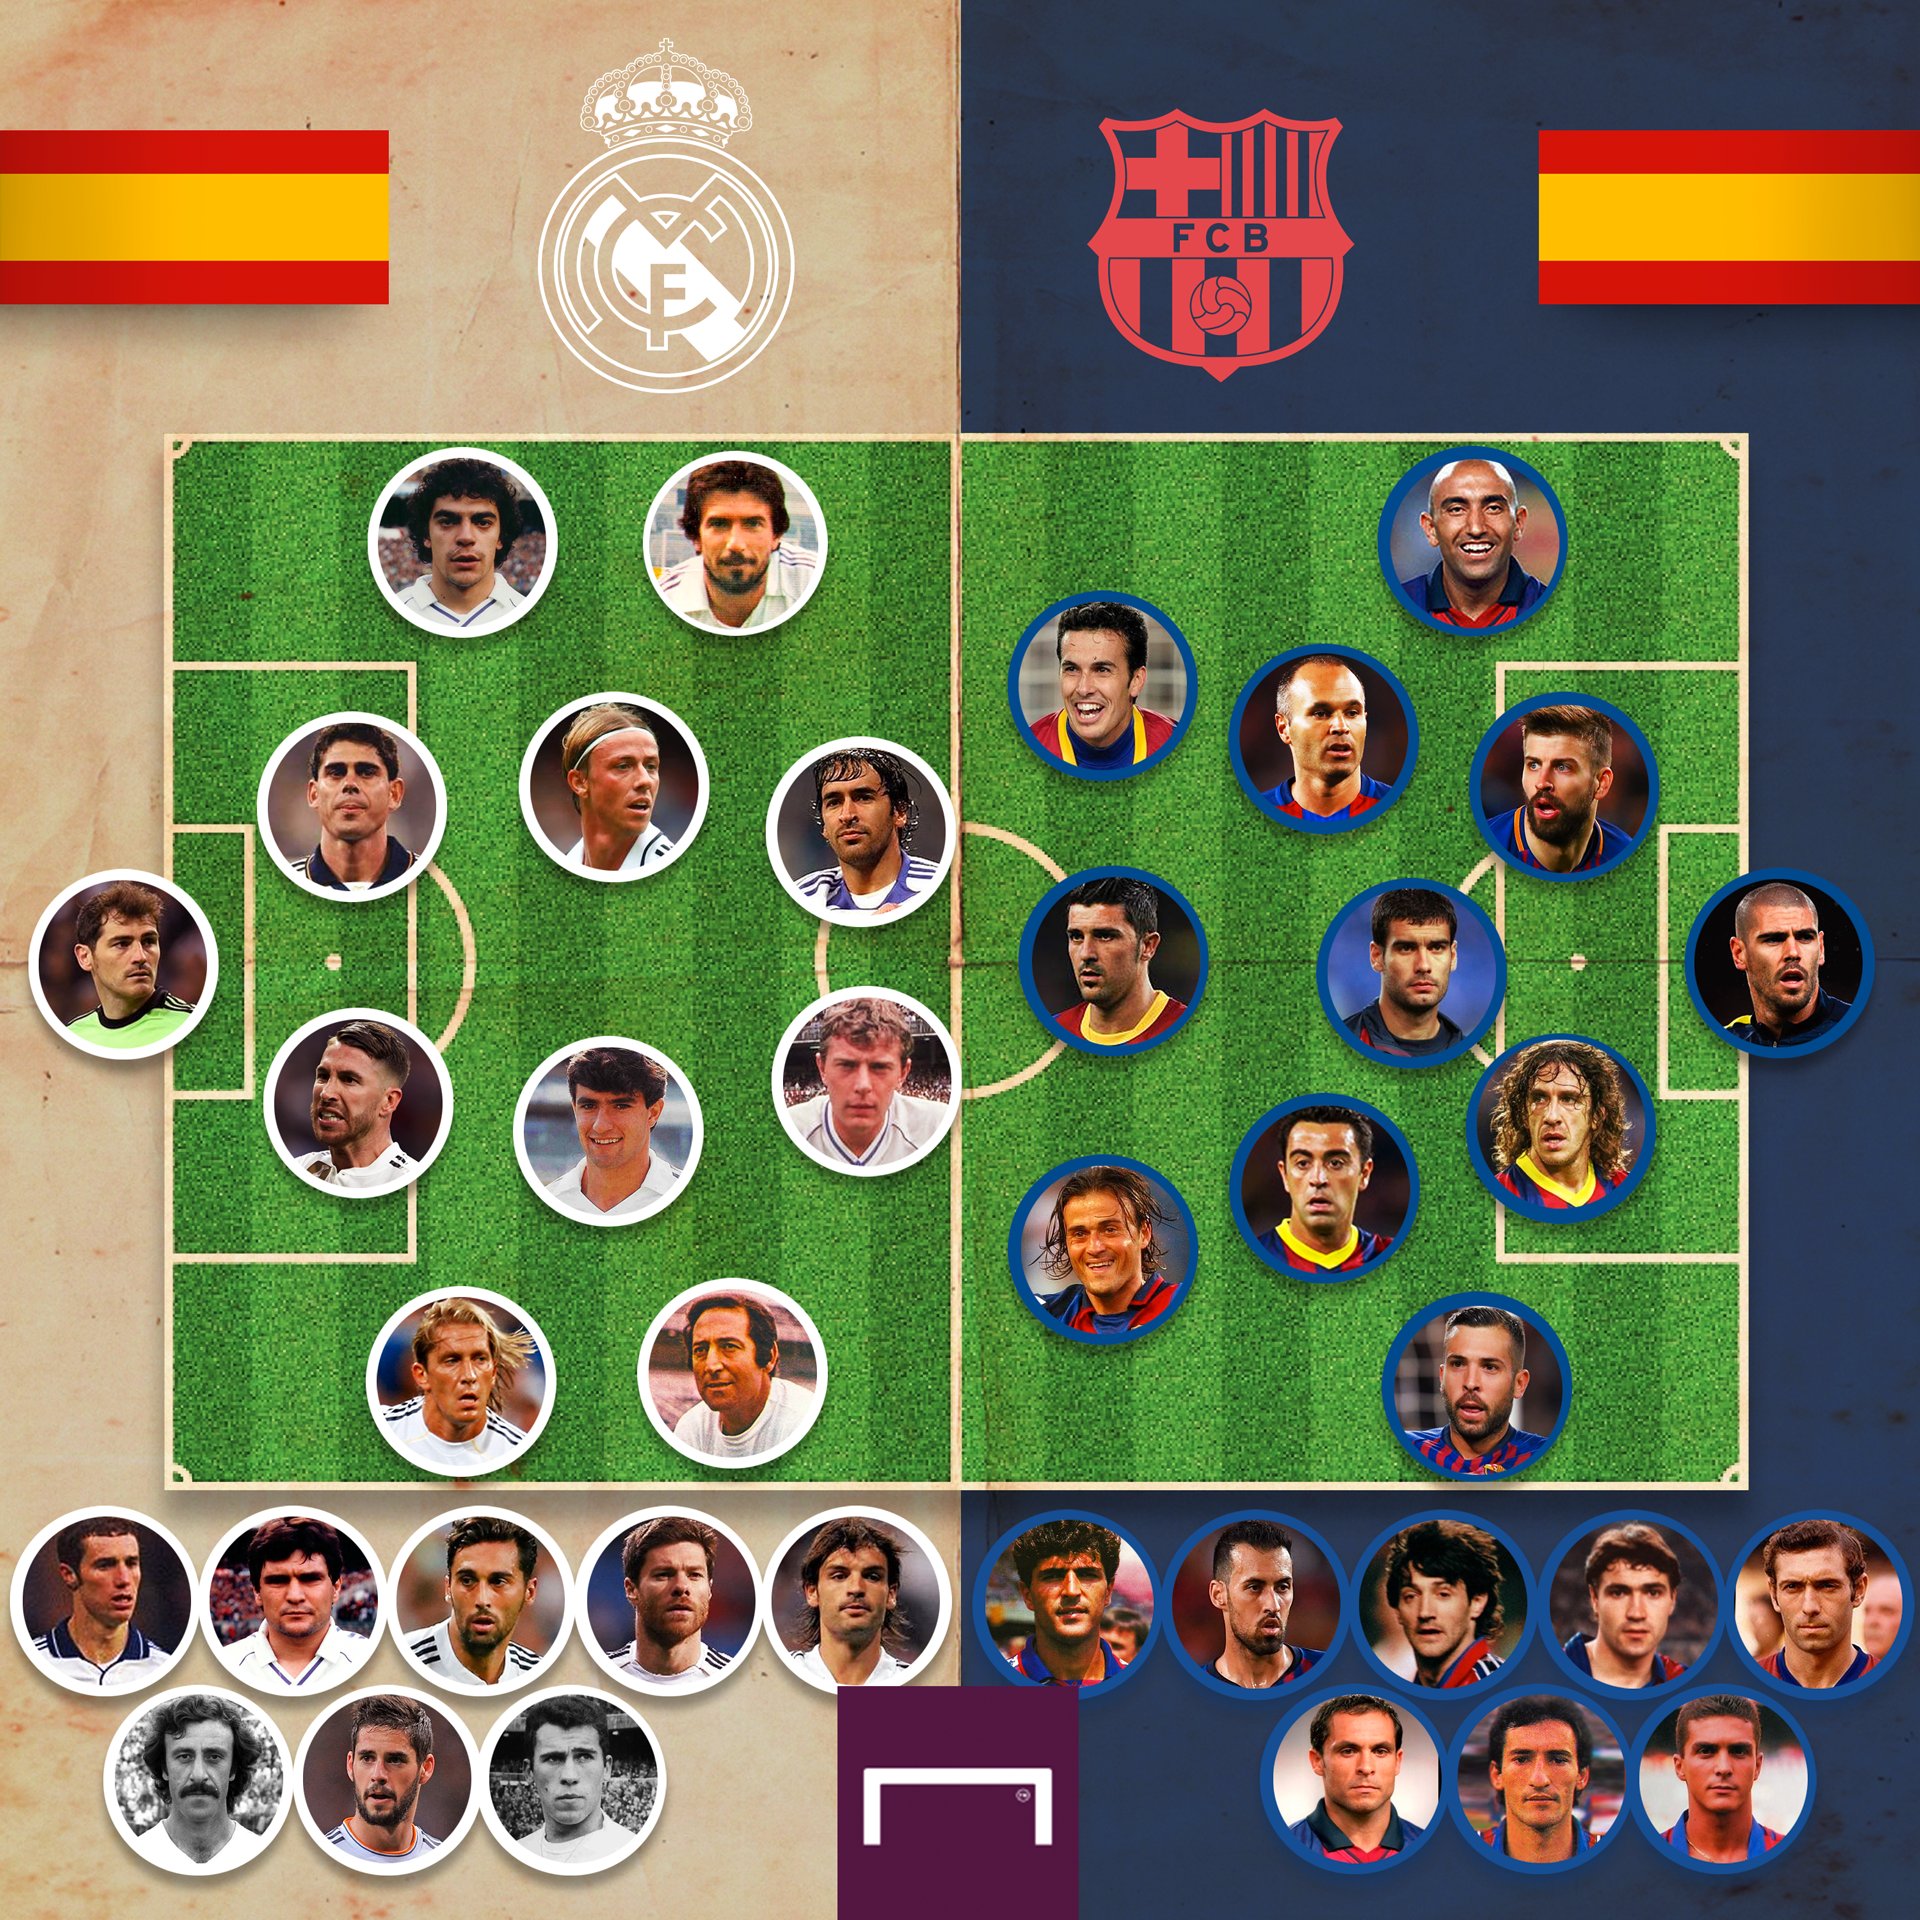 Barcelona vs madrid